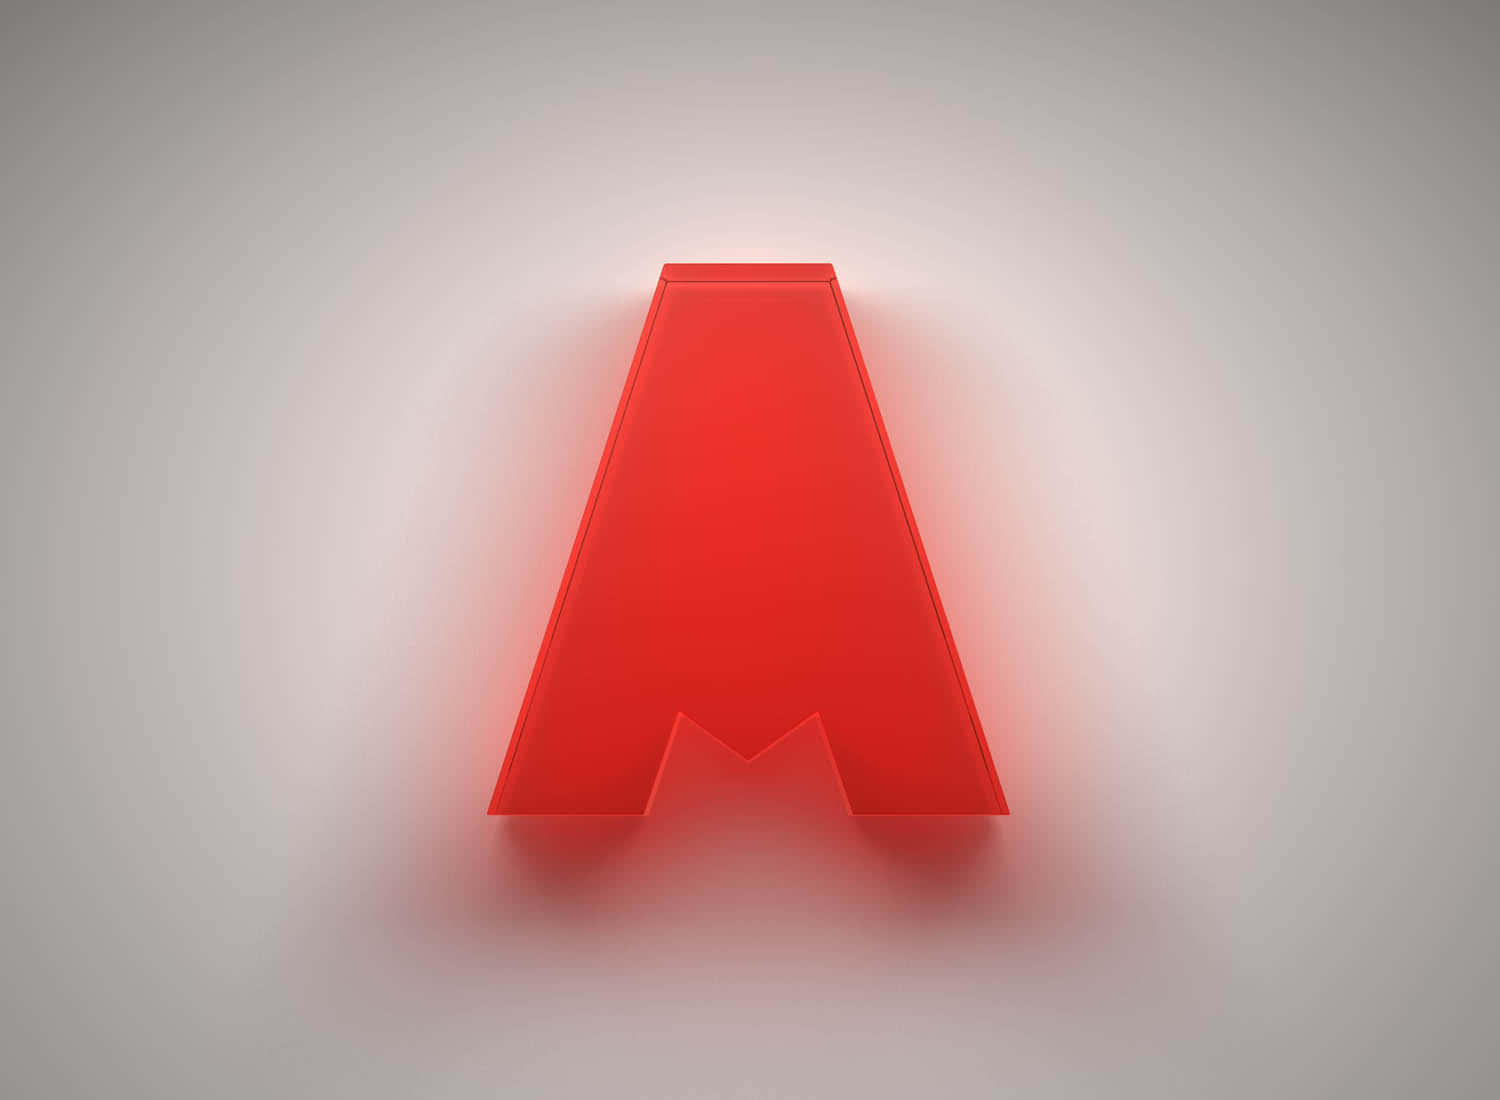 Brillantelogo De Apex Legends En 3d En Color Rojo Fondo de pantalla